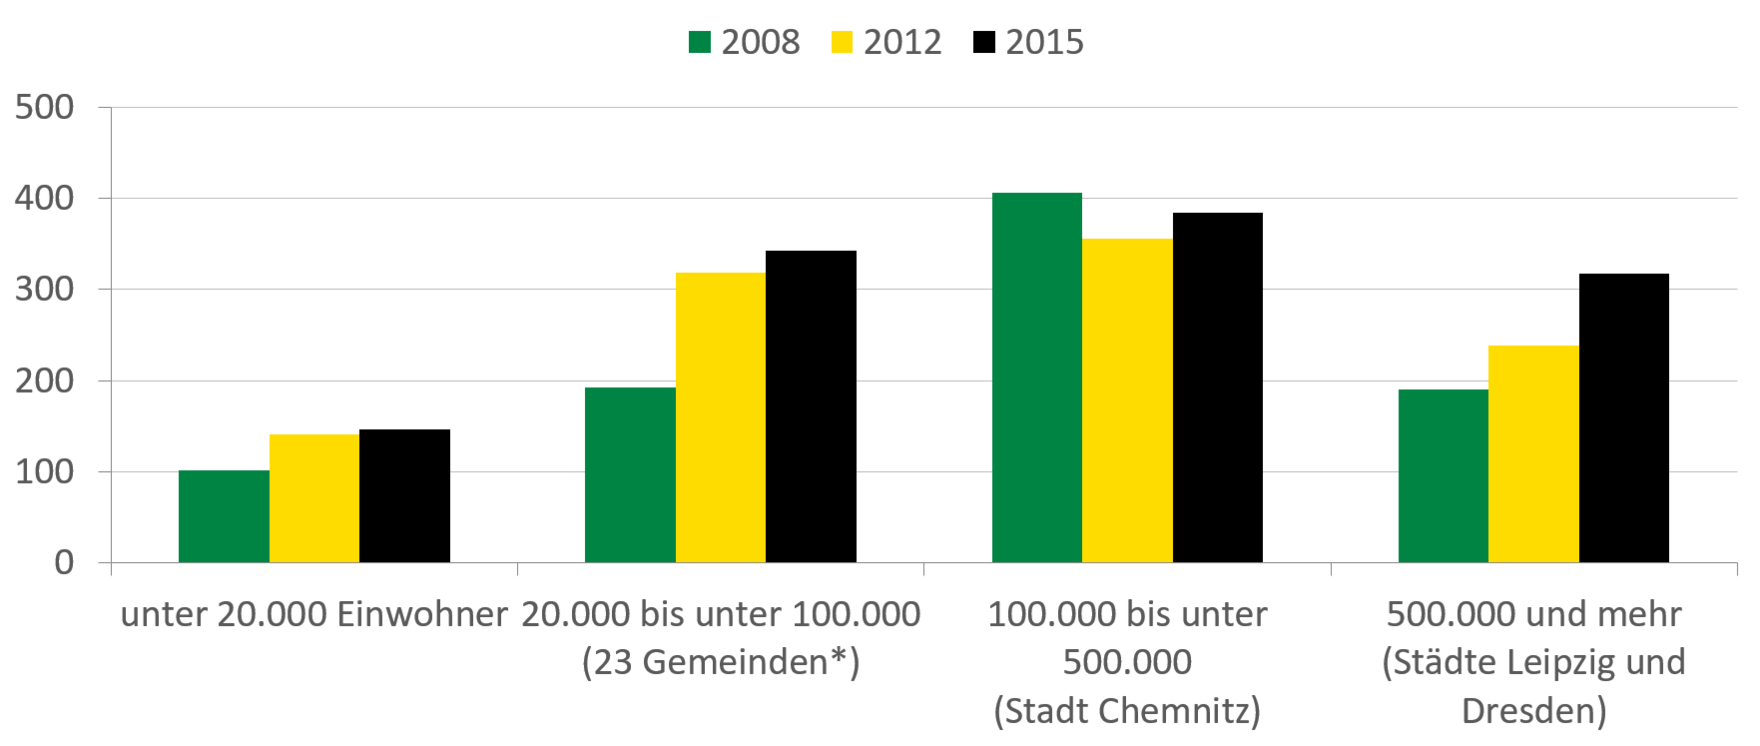 In Sachsen kamen Rauschgiftdelikte je 100.000 Einwohner 2008, 2012 und 2015 vor allem in mittelgroßen Städten mit bis zu 500.000 Einwohnern vor. Die Anzahl der erfassten Rauschgiftdelikte je 100.000 Einwohner in Städten mit mehr als 500.000 Einwohnern lag 2015 liegt bei etwas über 300 und war damit geringer als für Gemeinden mit bis zu 100.000 Einwohnern.